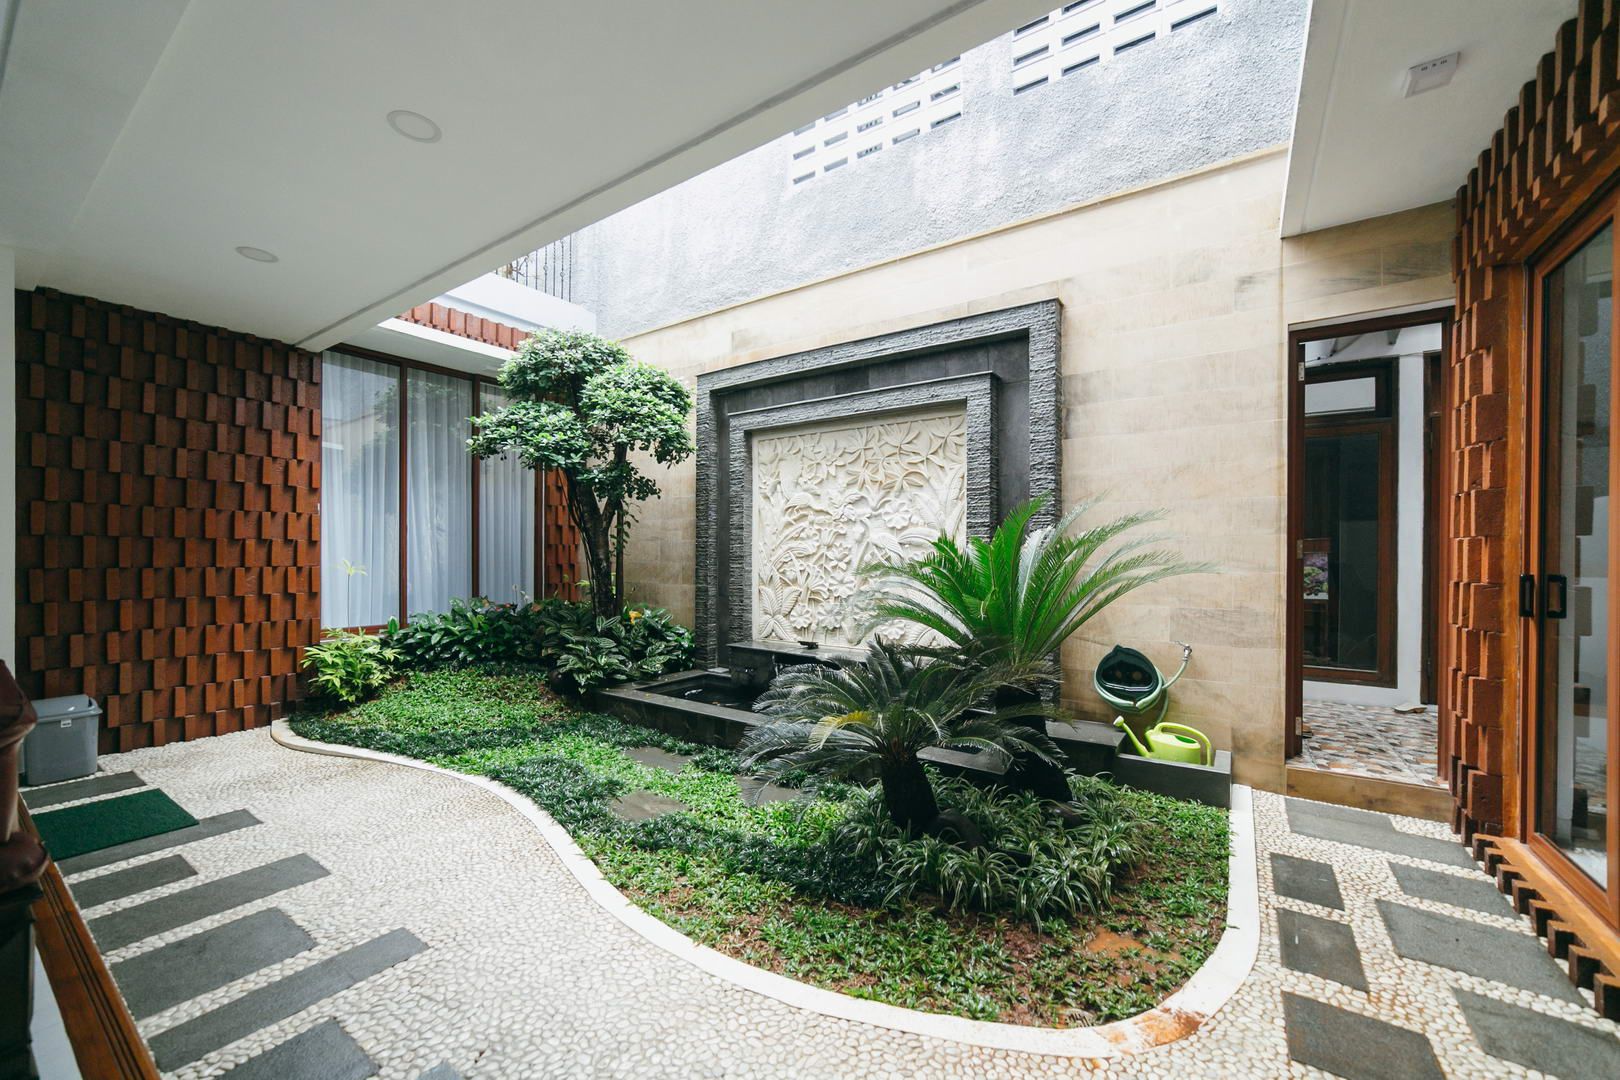 Project Renovasi Rumah 2 Lantai Style Tropical modern, Studio JAJ Studio JAJ Taman Tropis rumah tropis modern